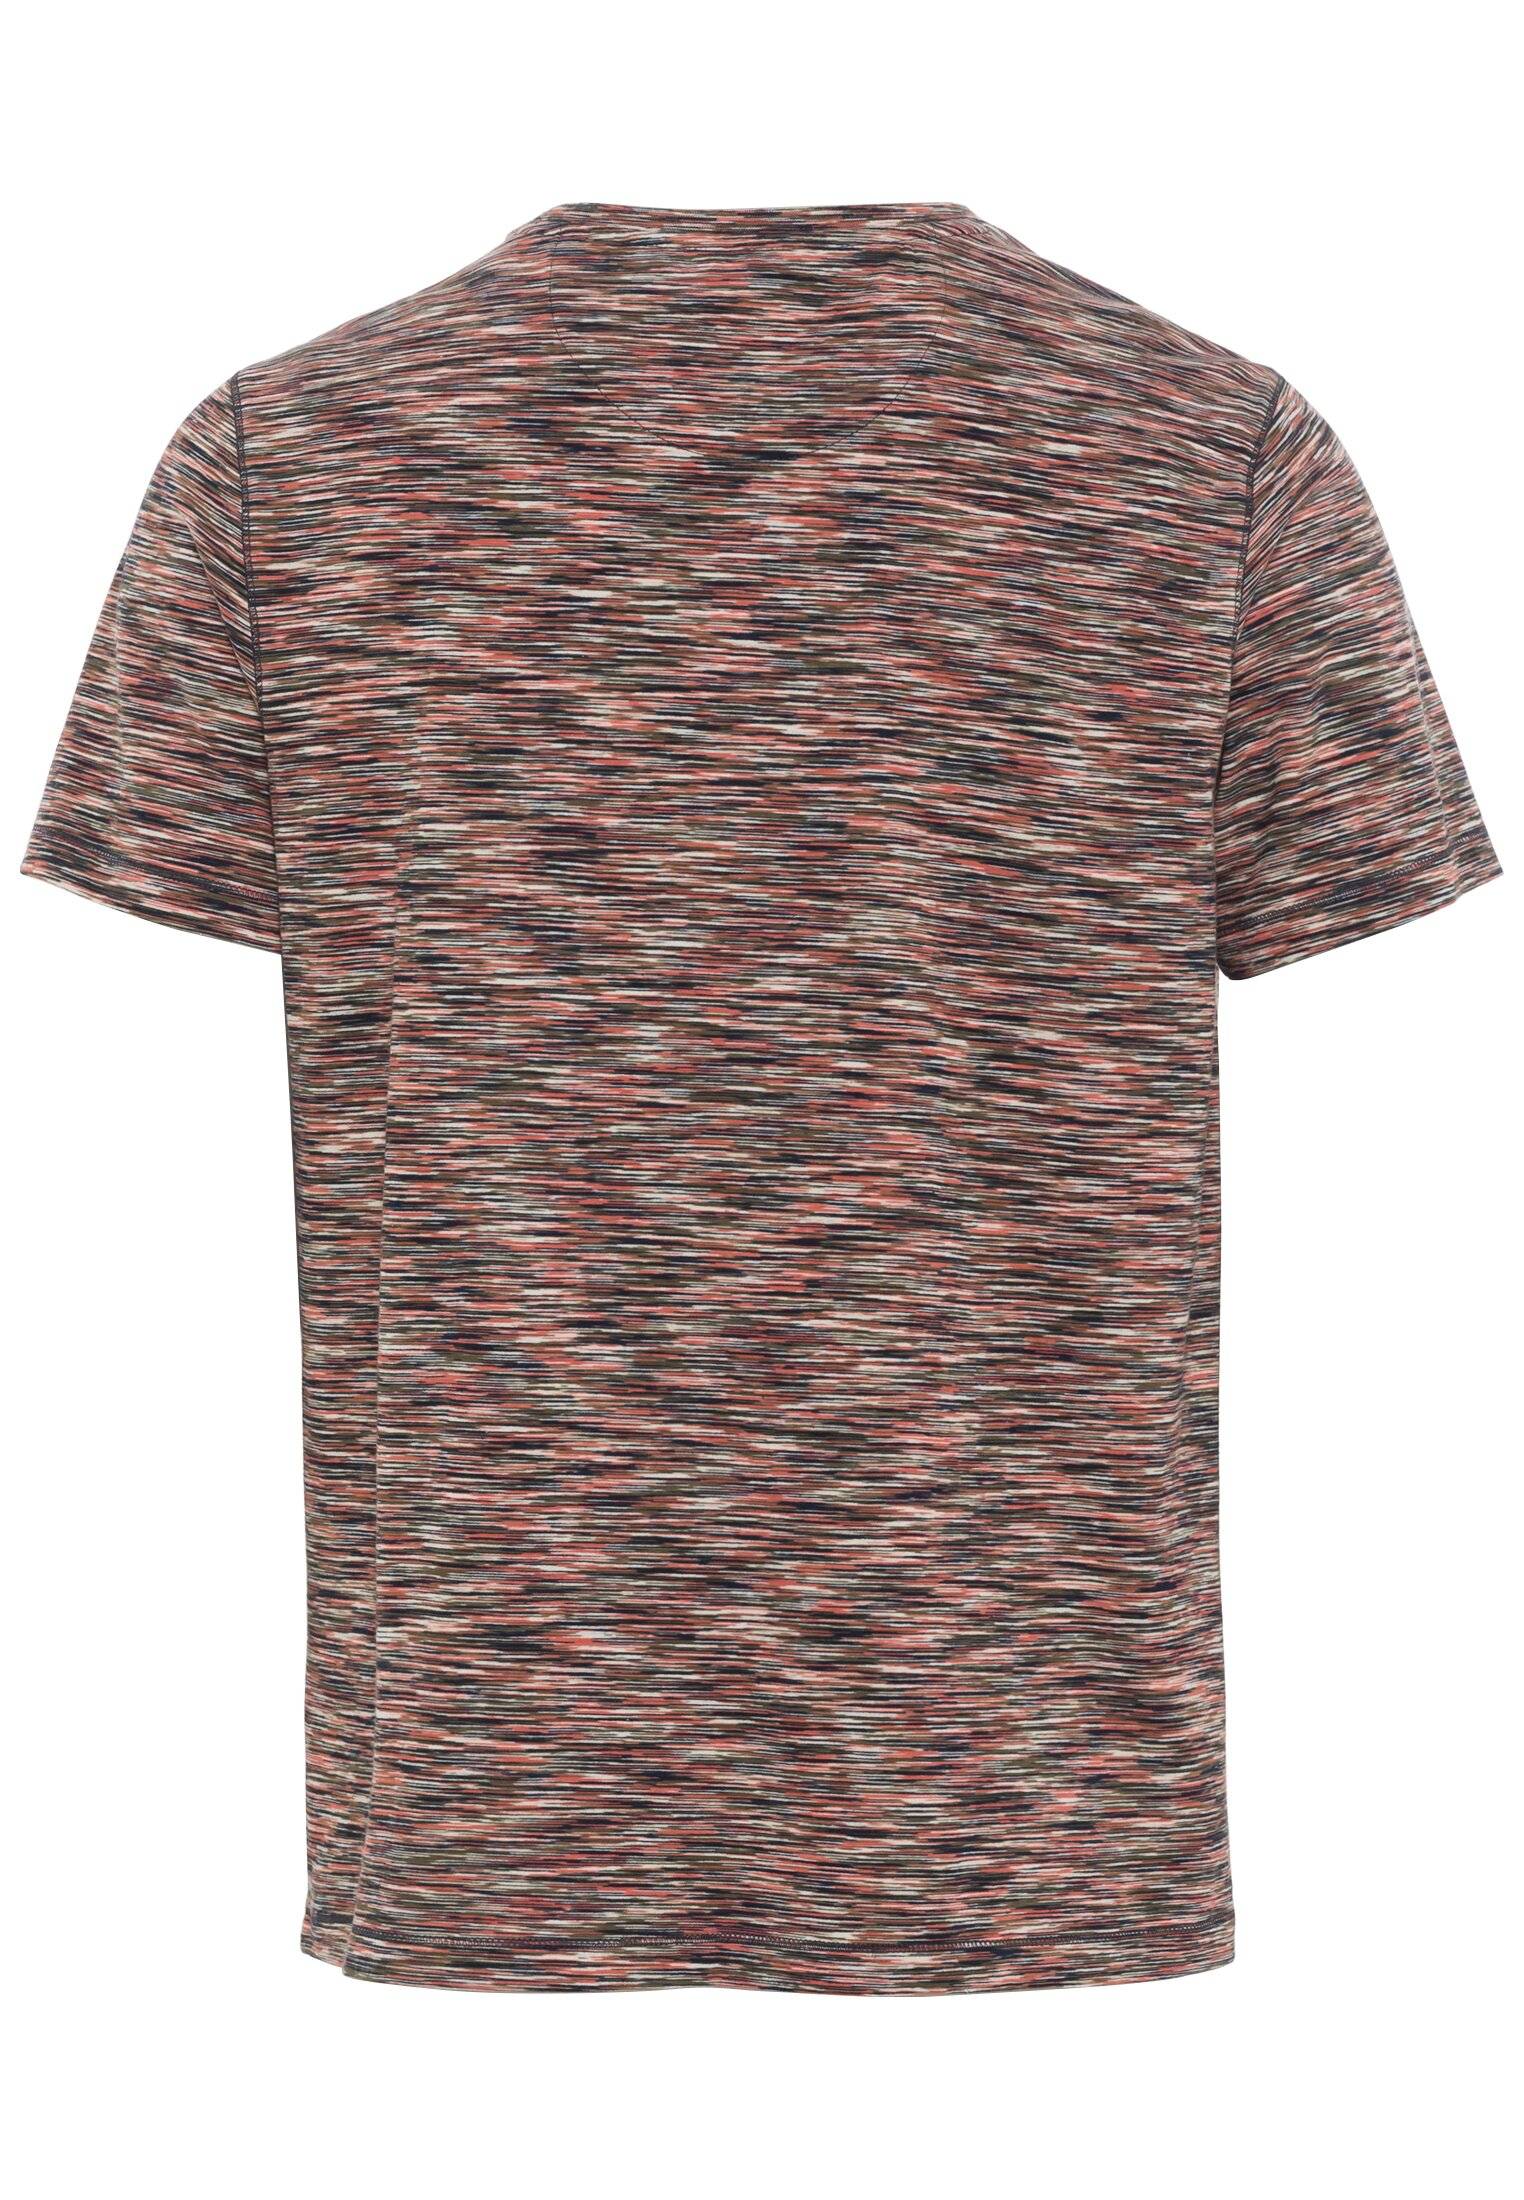 Мужская футболка Camel Active, коралловая, цвет коралловый, размер 46 - фото 2